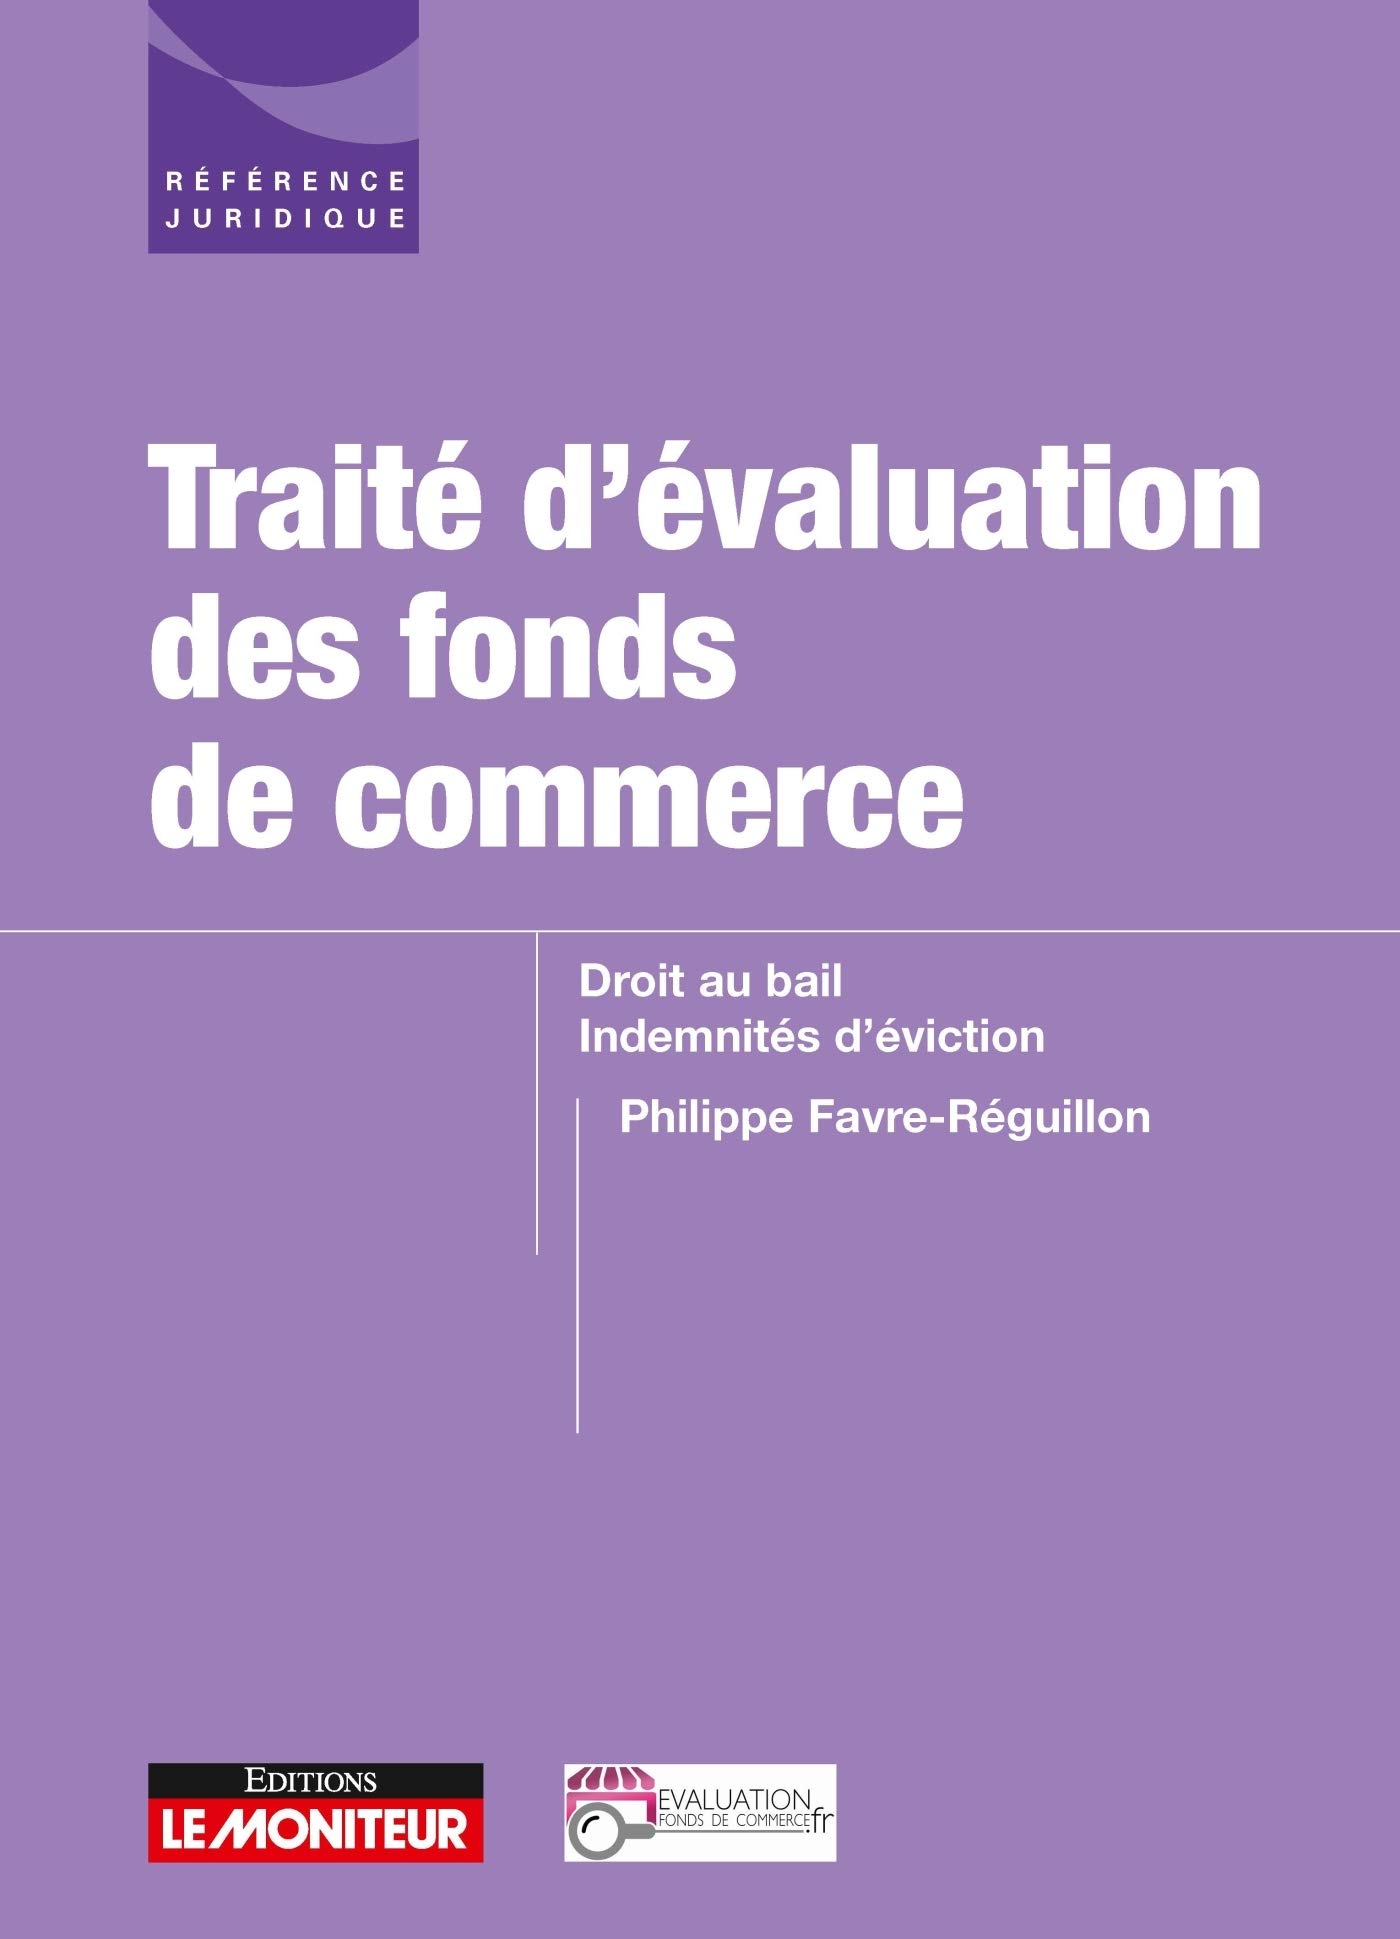 traité_evaluation_fonds_de_commerce_droit_au_bail_indemnités_eviction_philippe_favre_reguillon